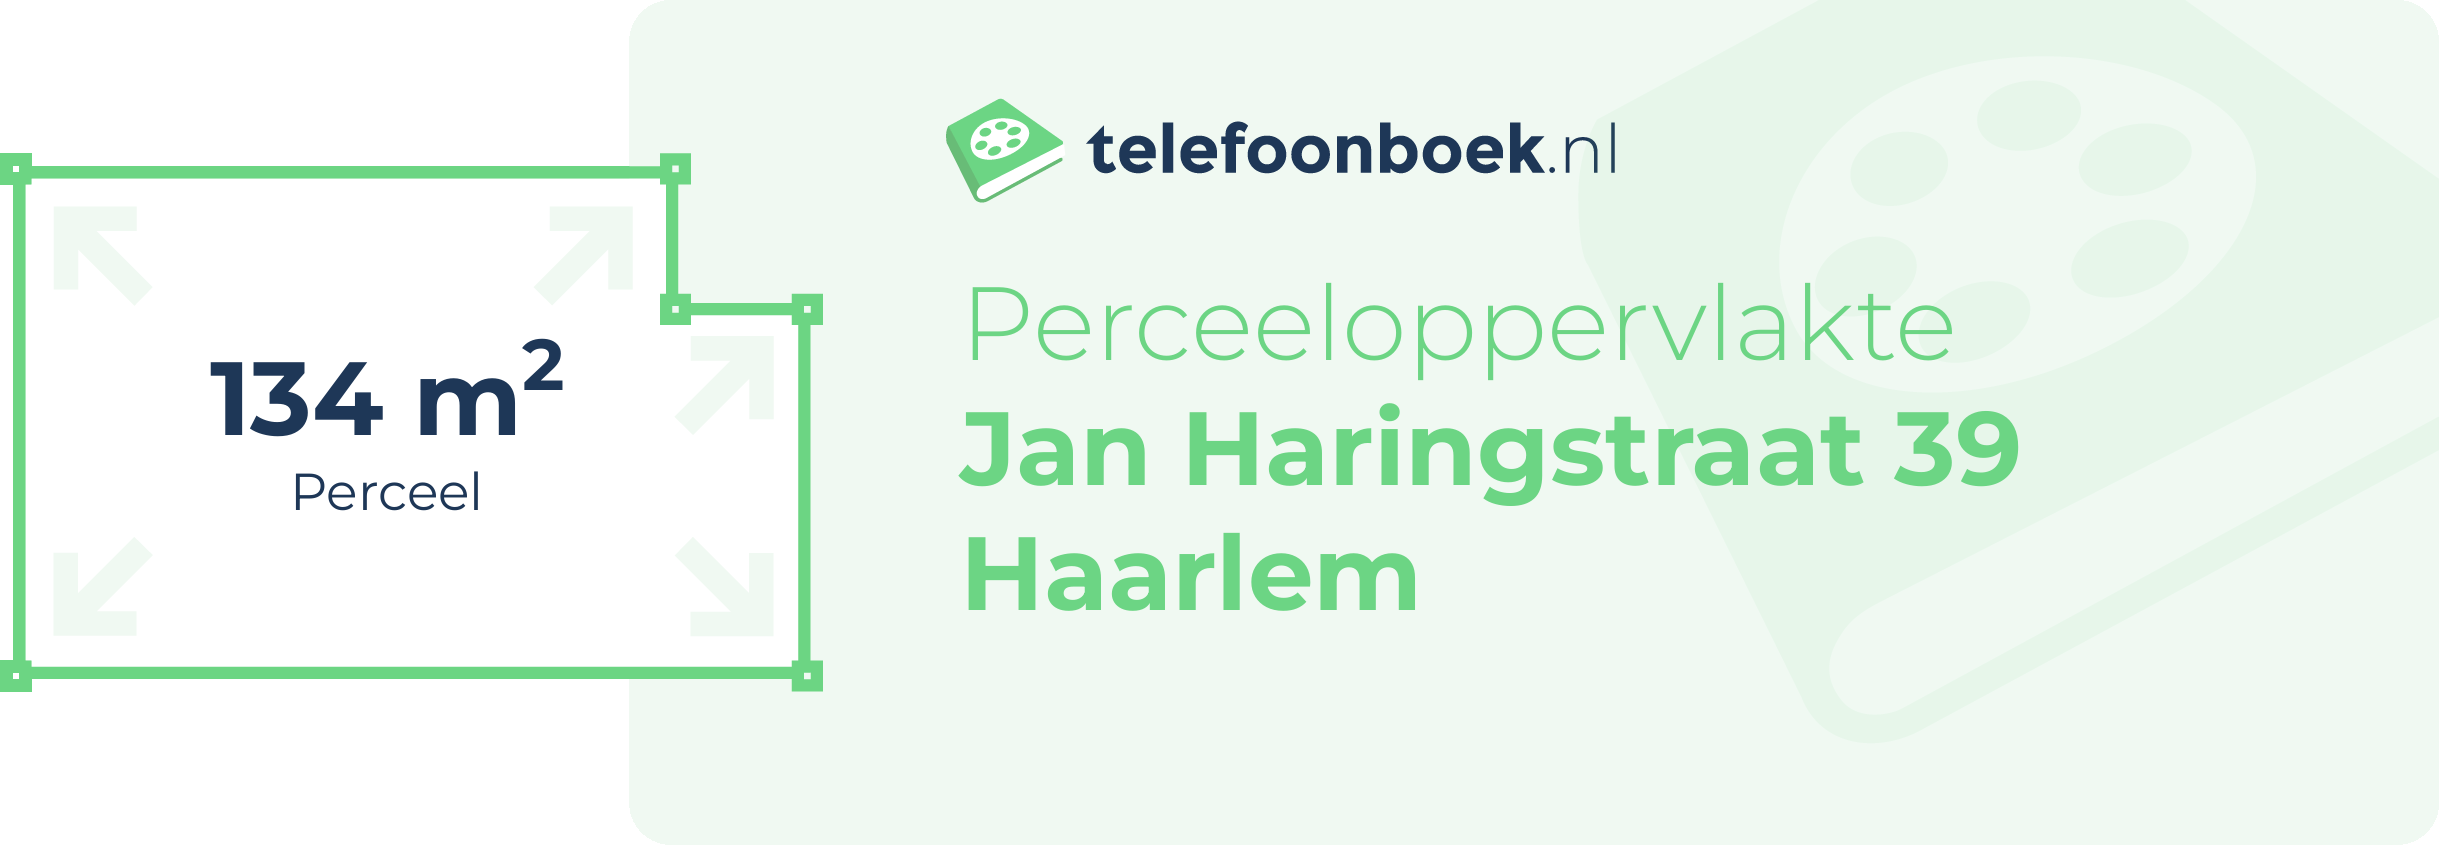 Perceeloppervlakte Jan Haringstraat 39 Haarlem